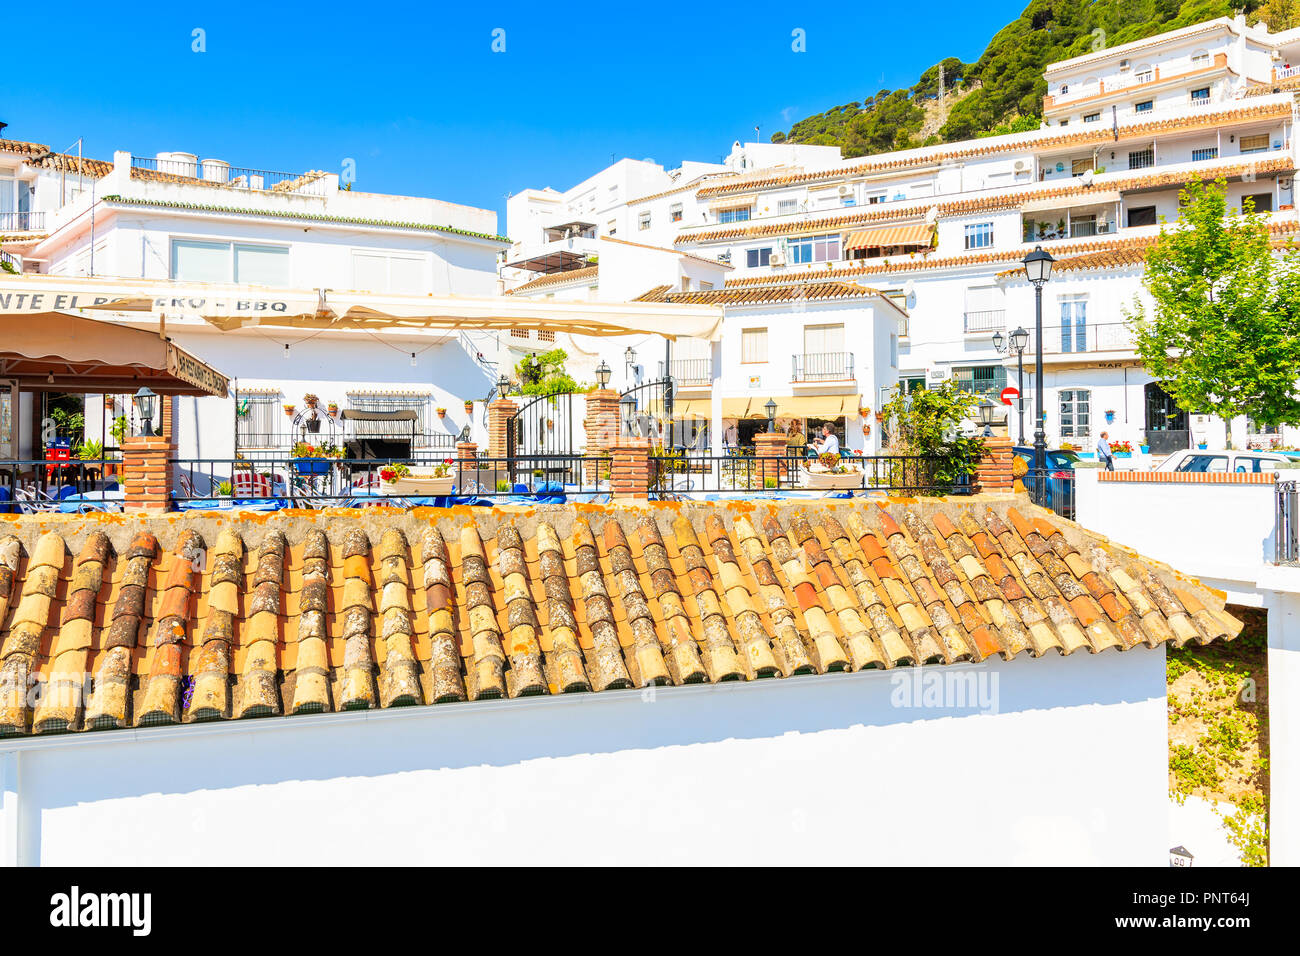 Stadt Mijas, Spanien - 9. Mai 2018: schöne Gebäude im malerischen Dorf Mijas bekannt für Weiße typische Architektur Andalusiens. Spanien ist das seco Stockfoto